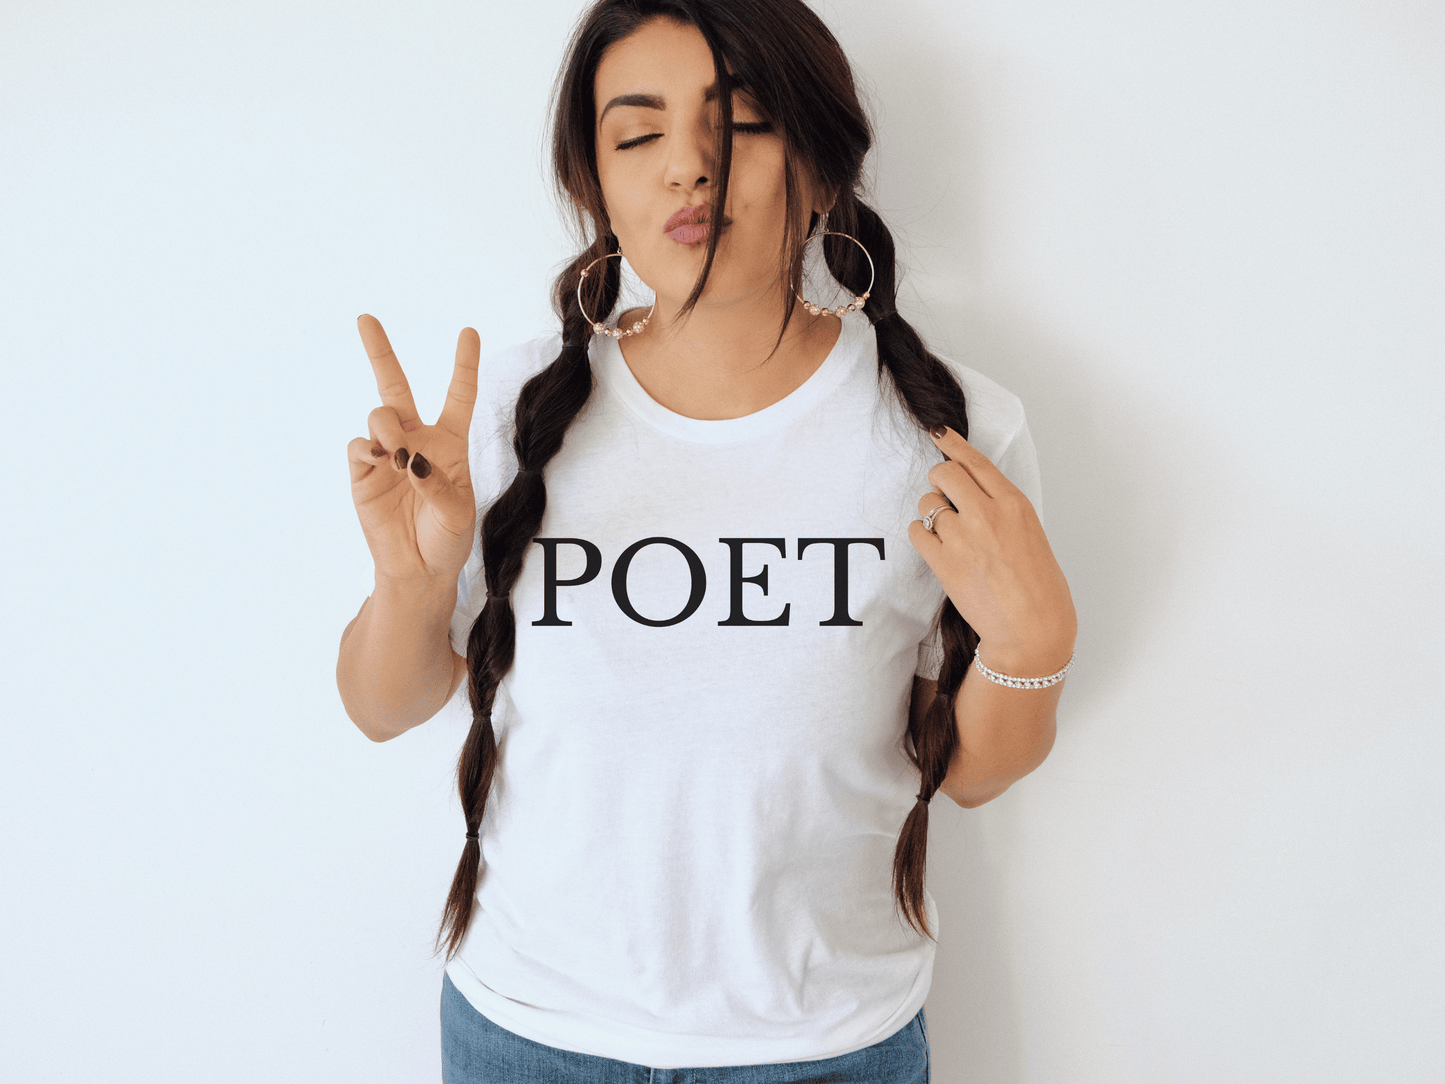 Poet T-Shirt in White